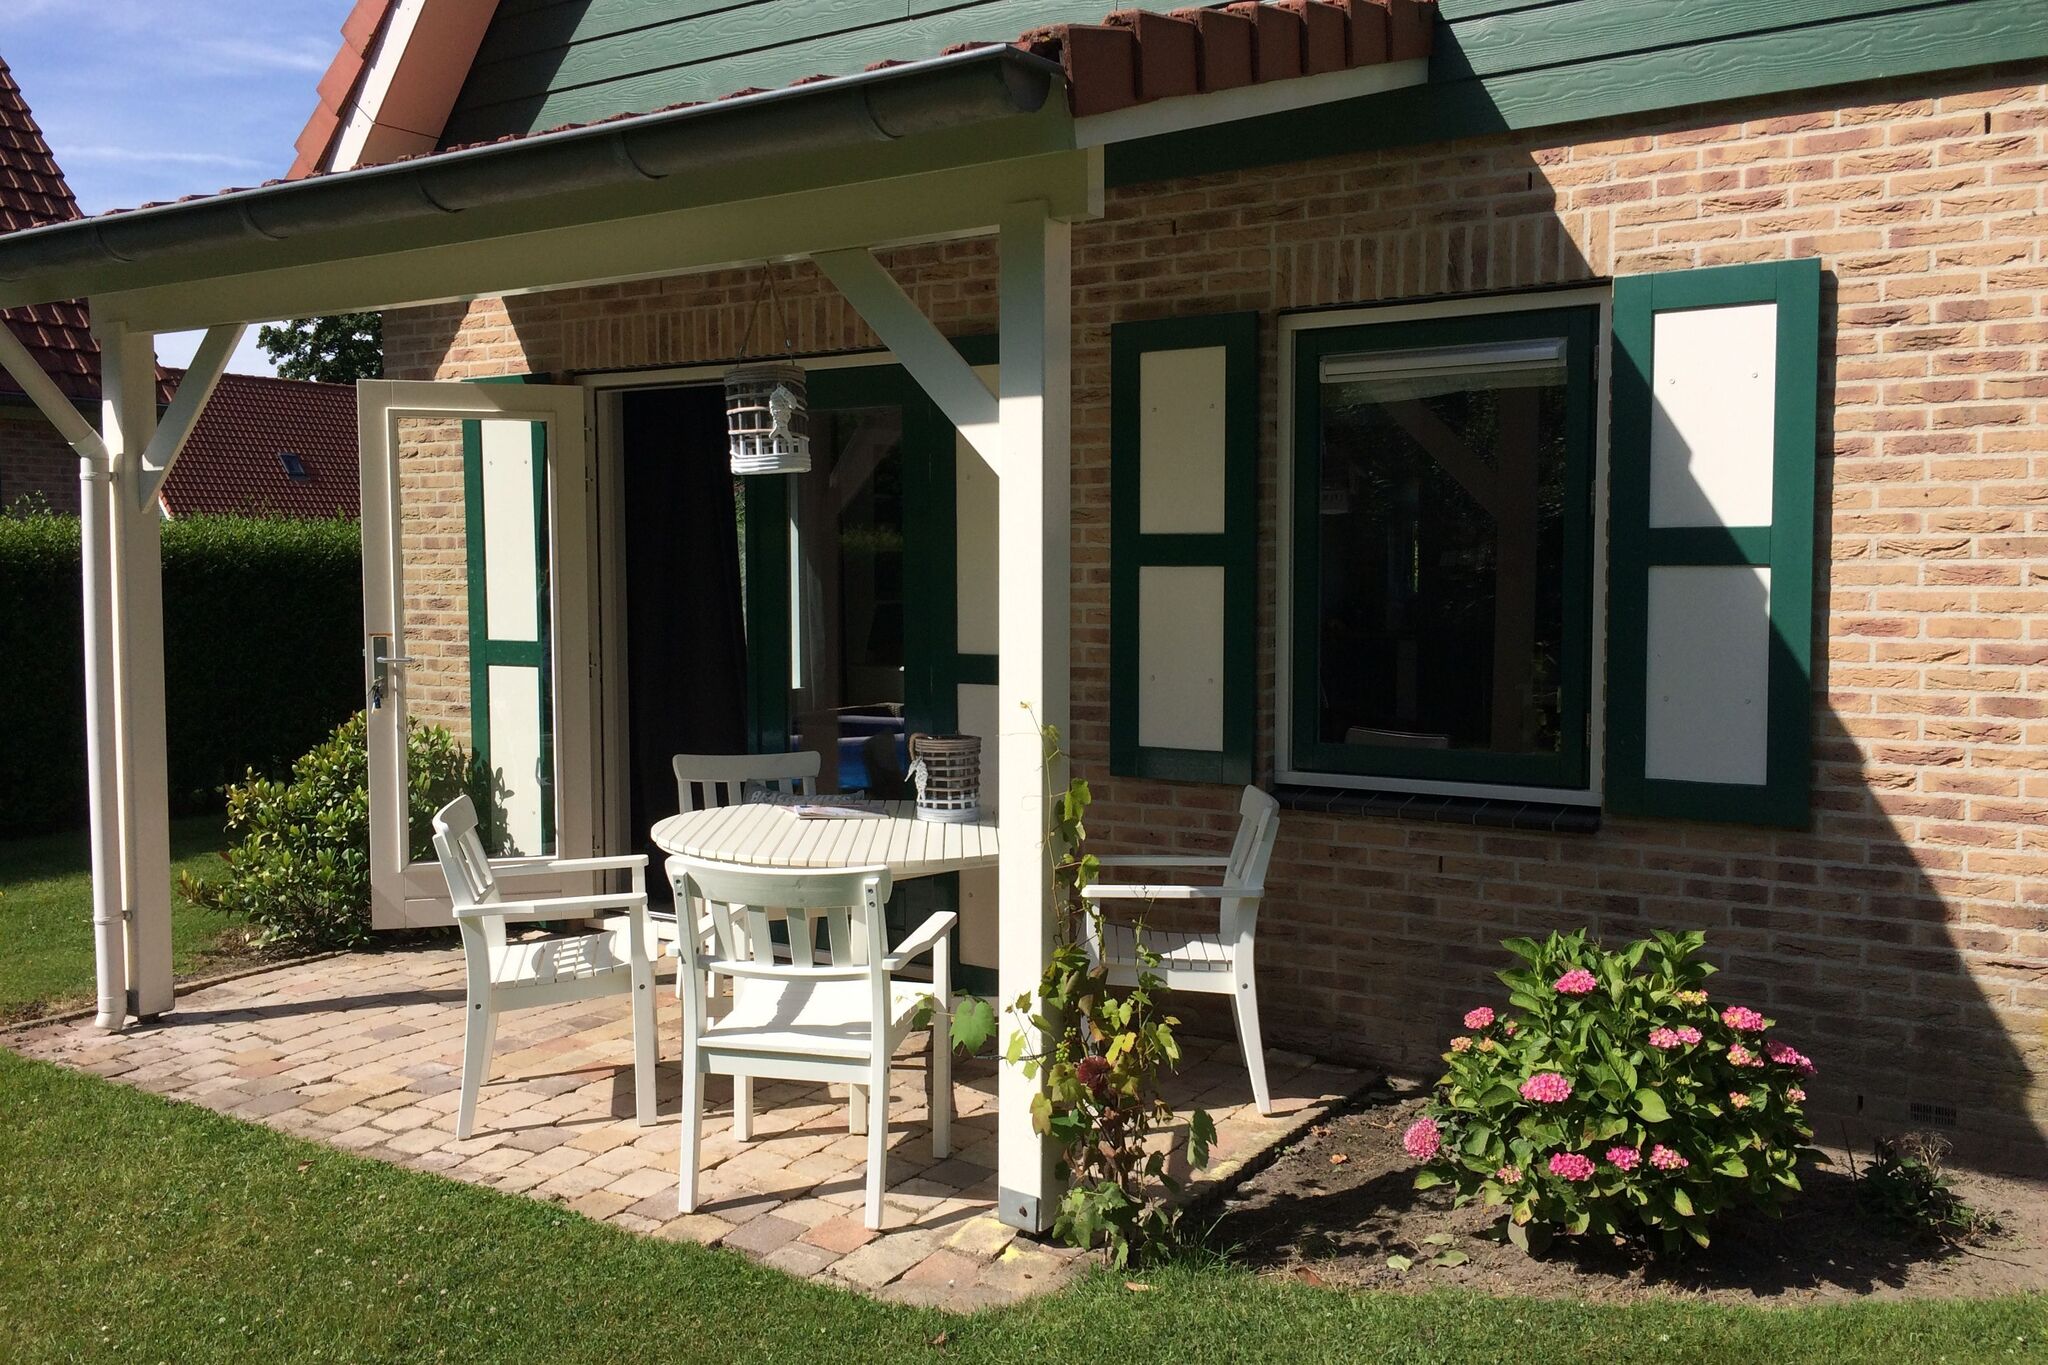 Belle maison de vacances bien entretenue, située à Zonnemaire, à une courte distance de la mer !